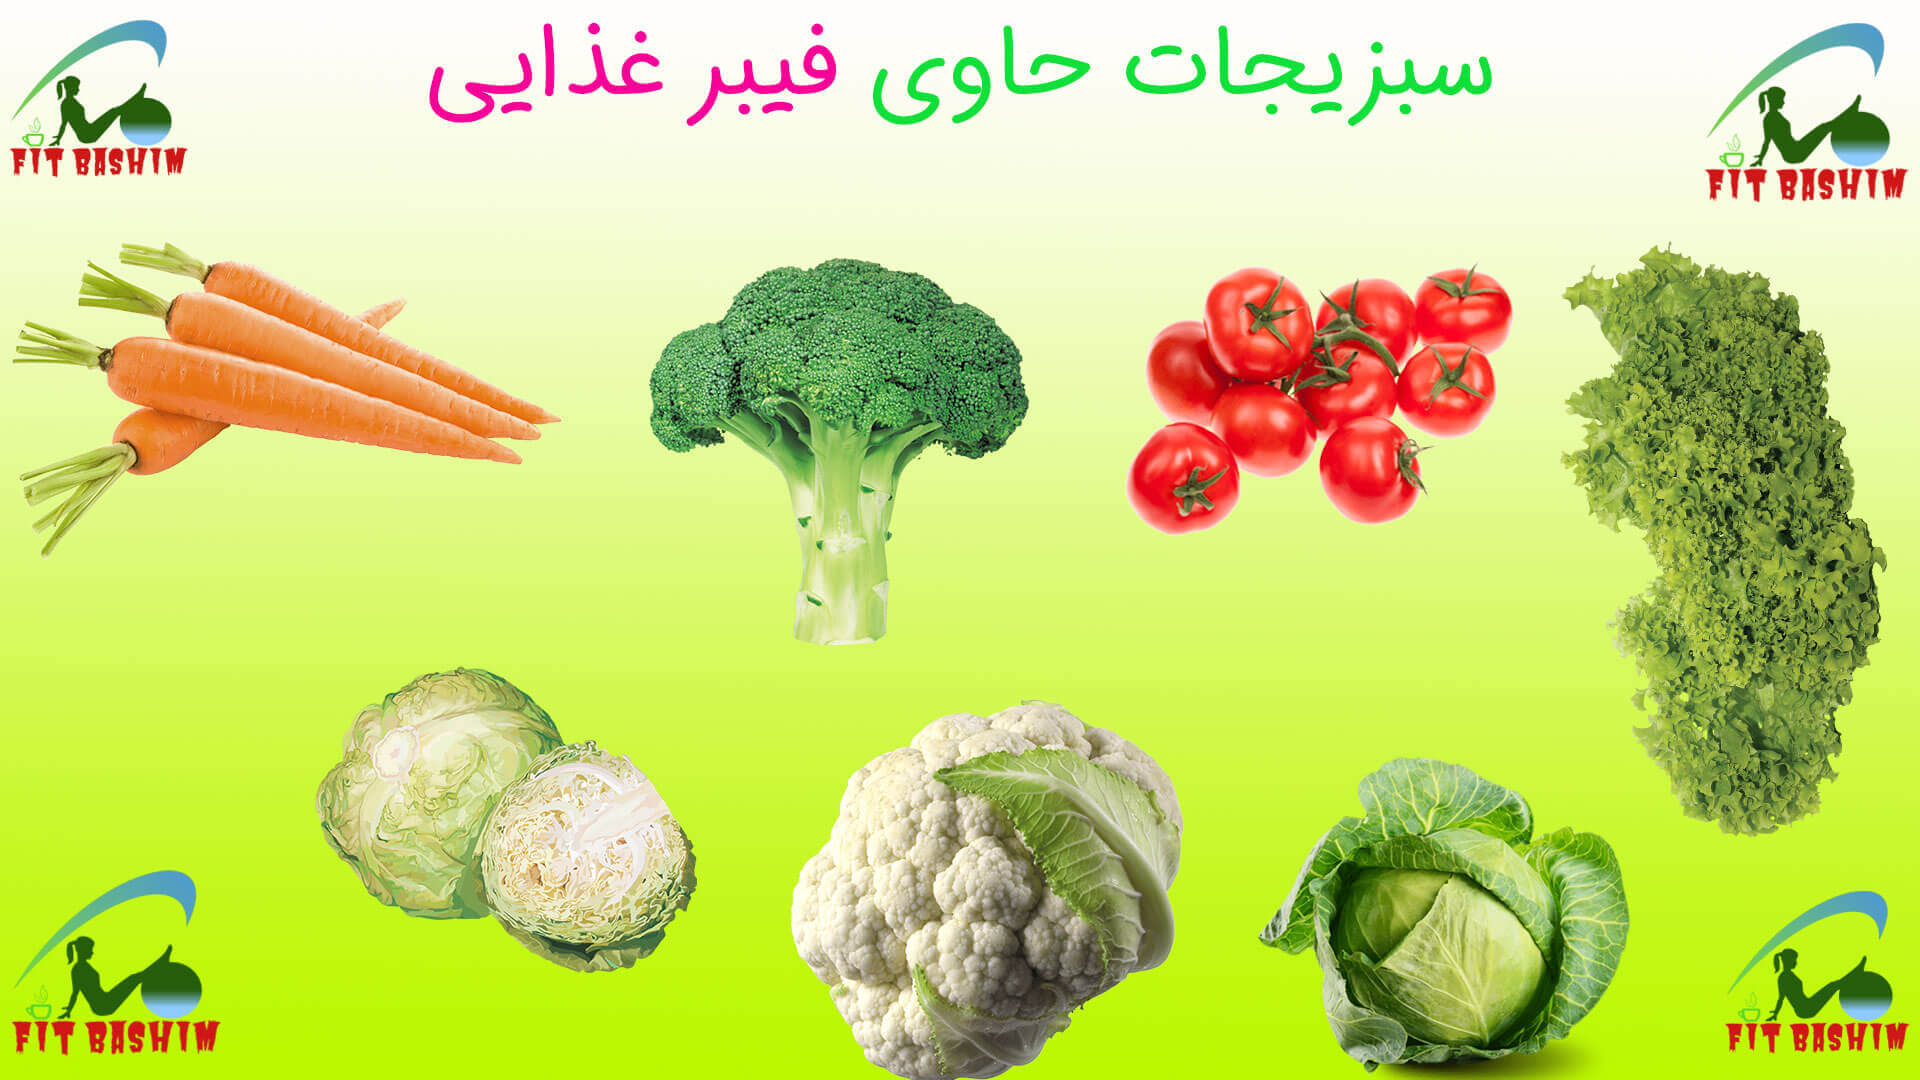 سبزیجات حاوی فیبر غذایی